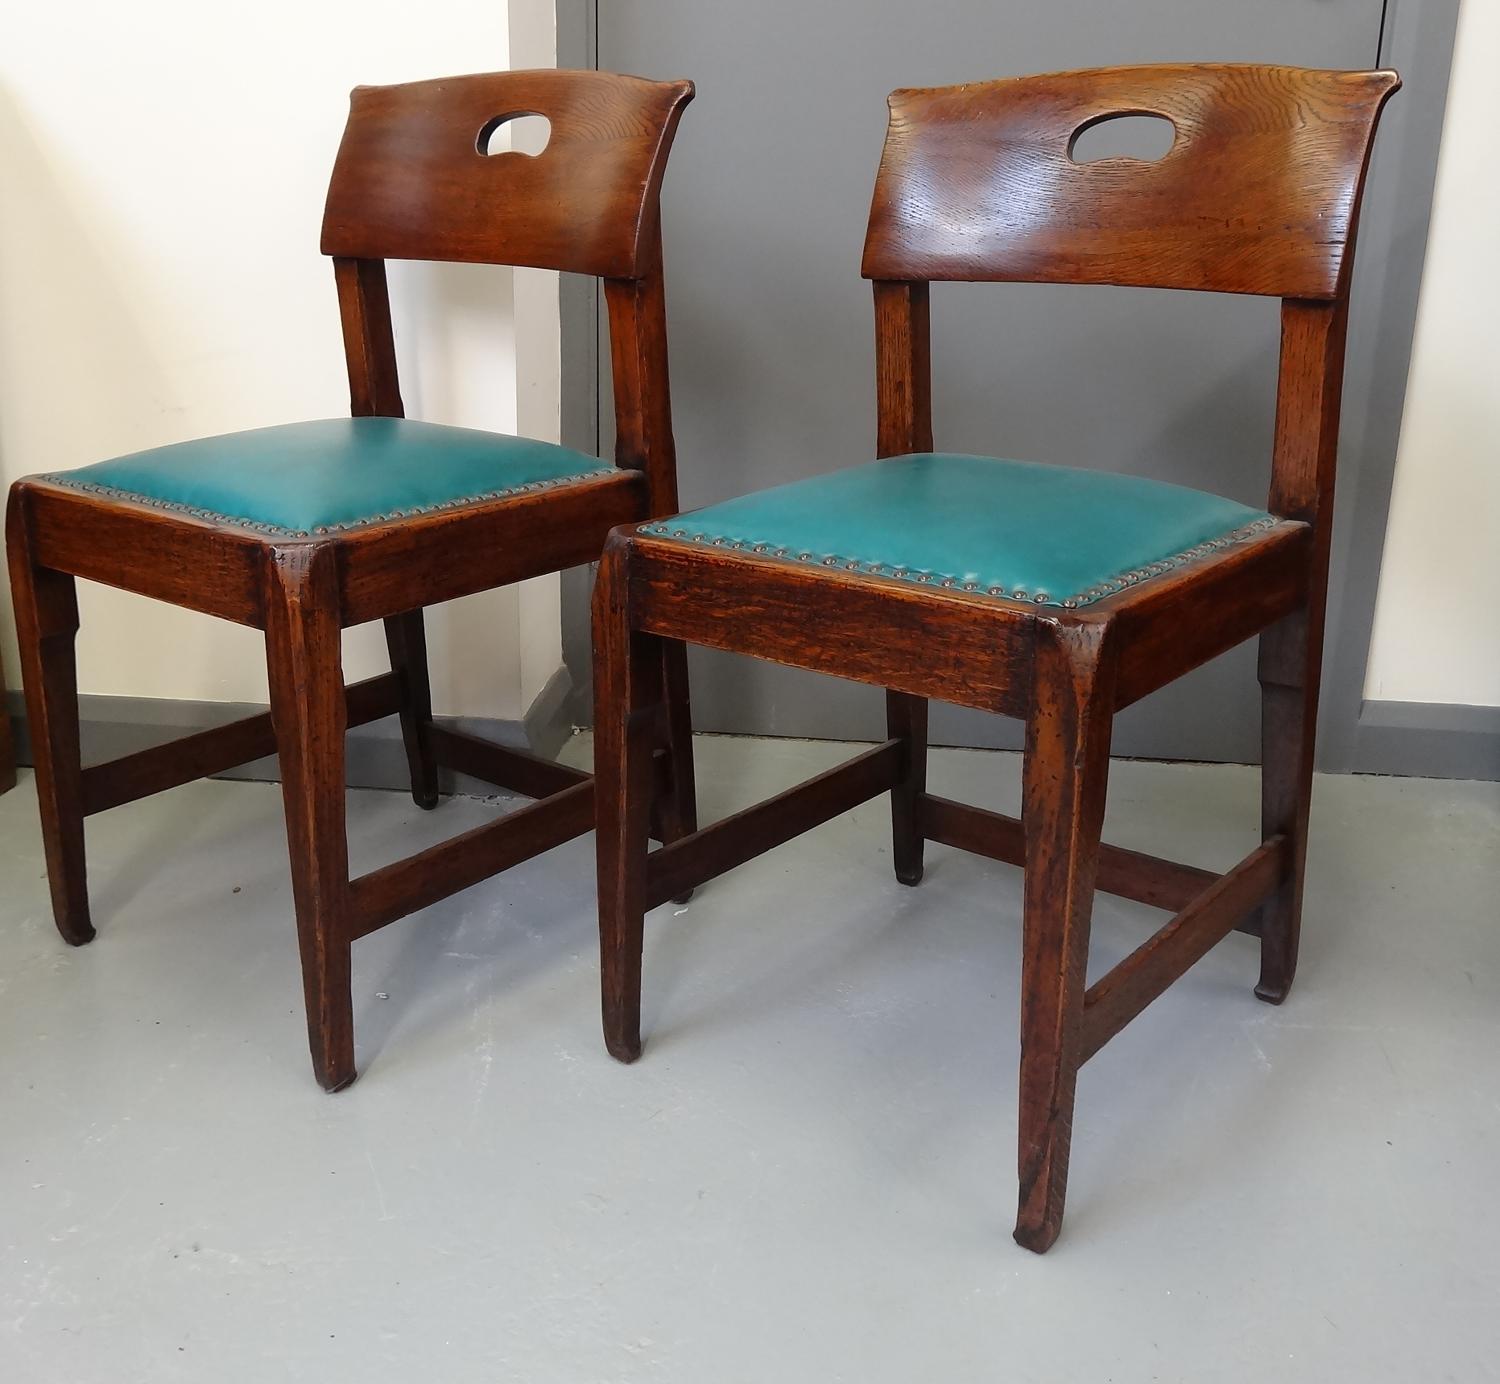 Rare pair of Richard Riemerschmid Arts & Crafts chairs